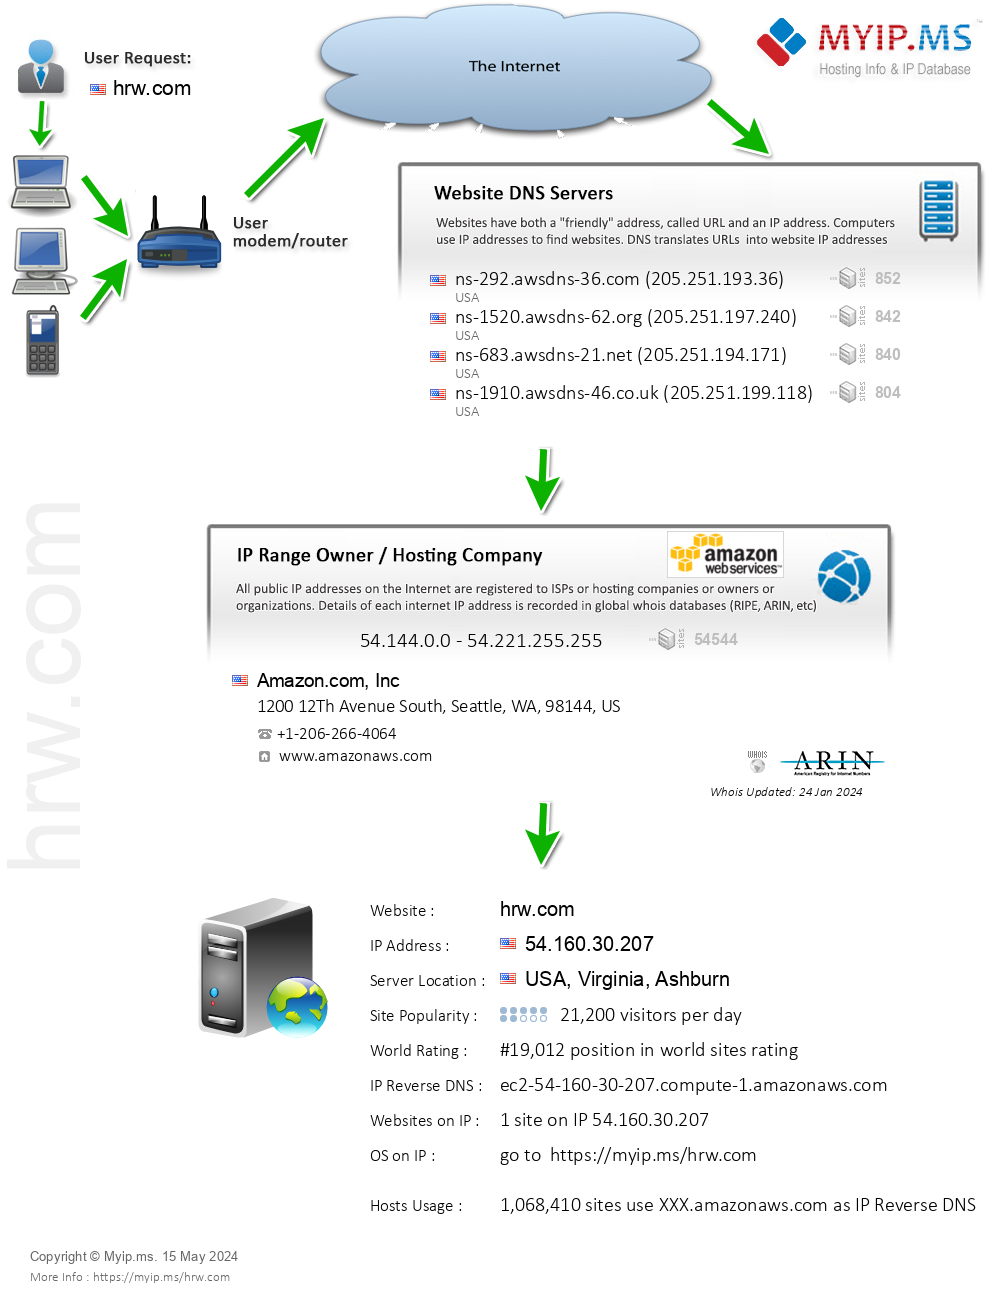 Hrw.com - Website Hosting Visual IP Diagram